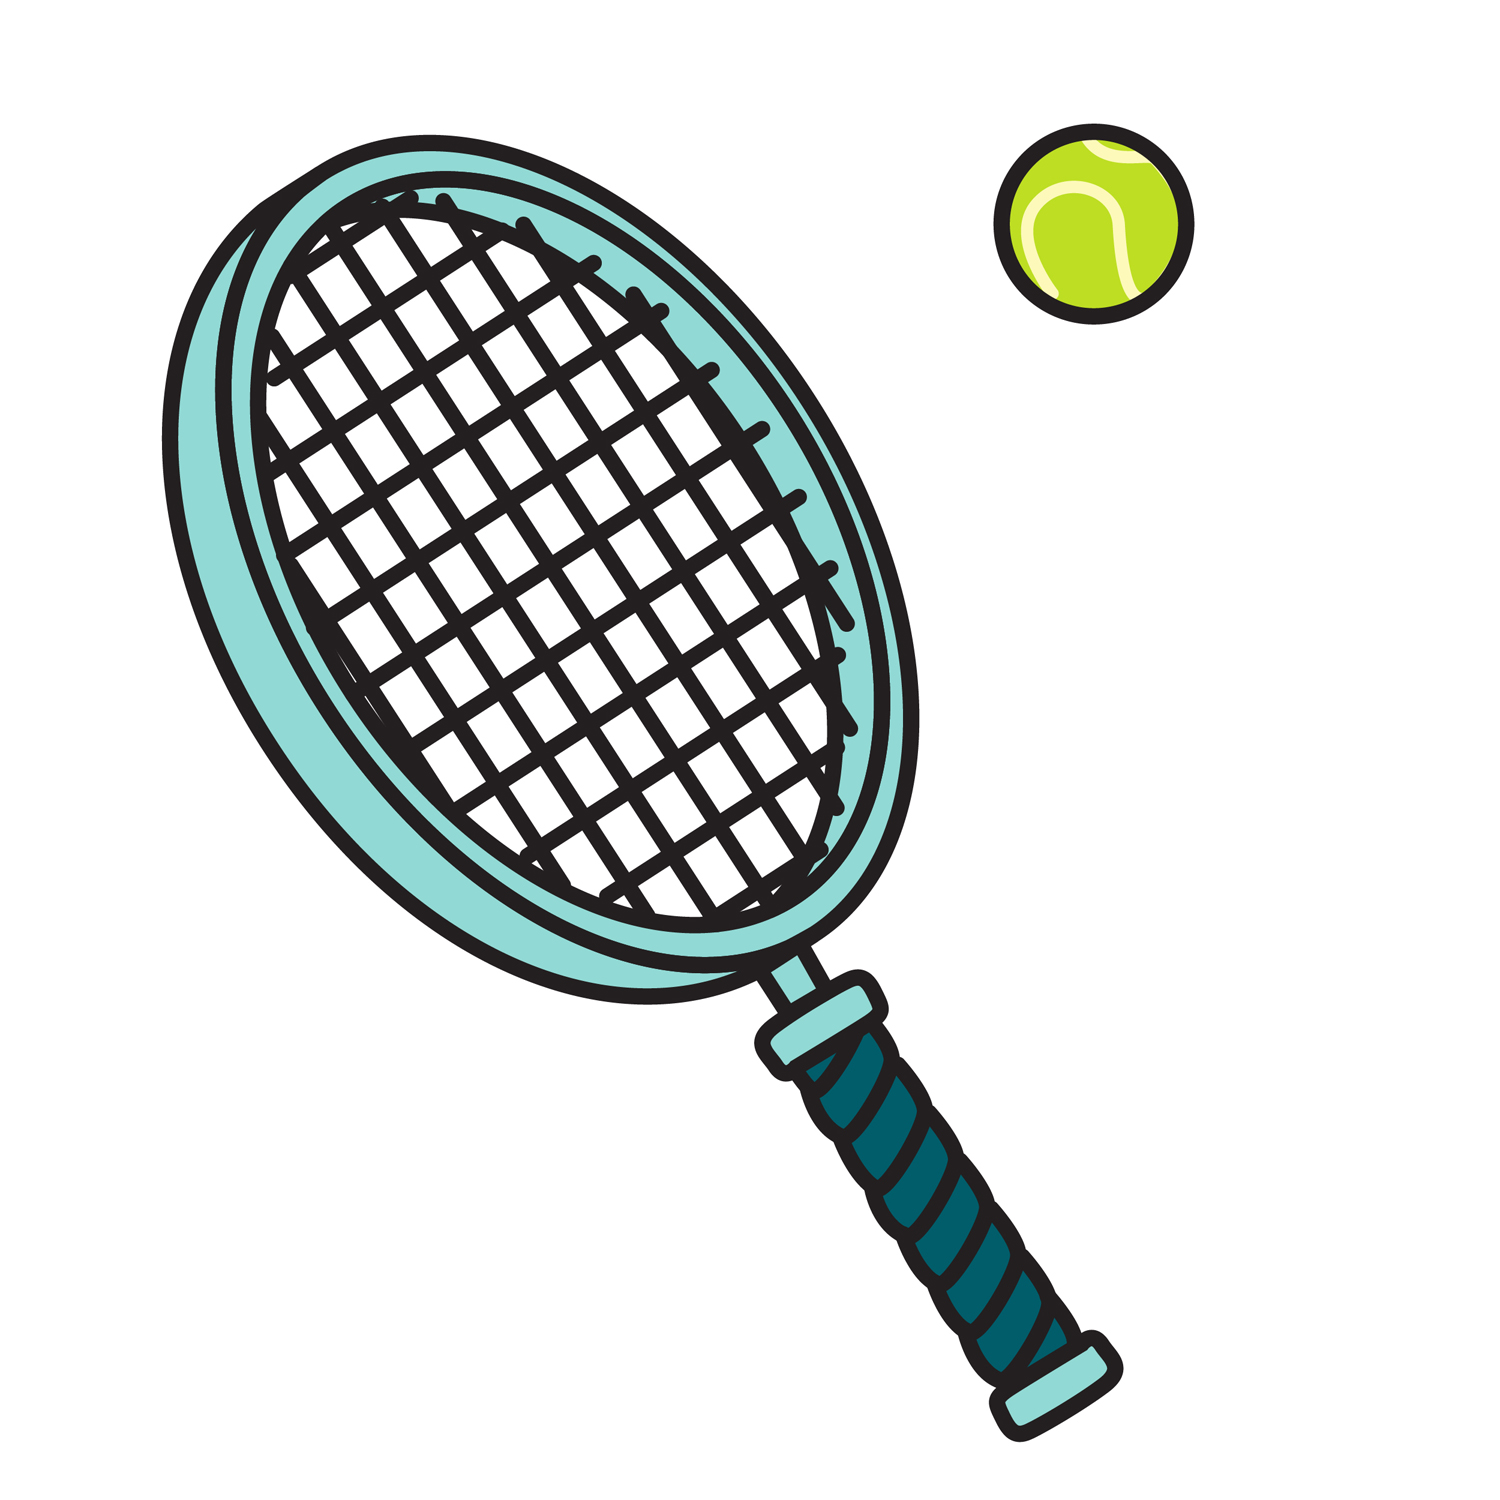 Tennis racket ball.